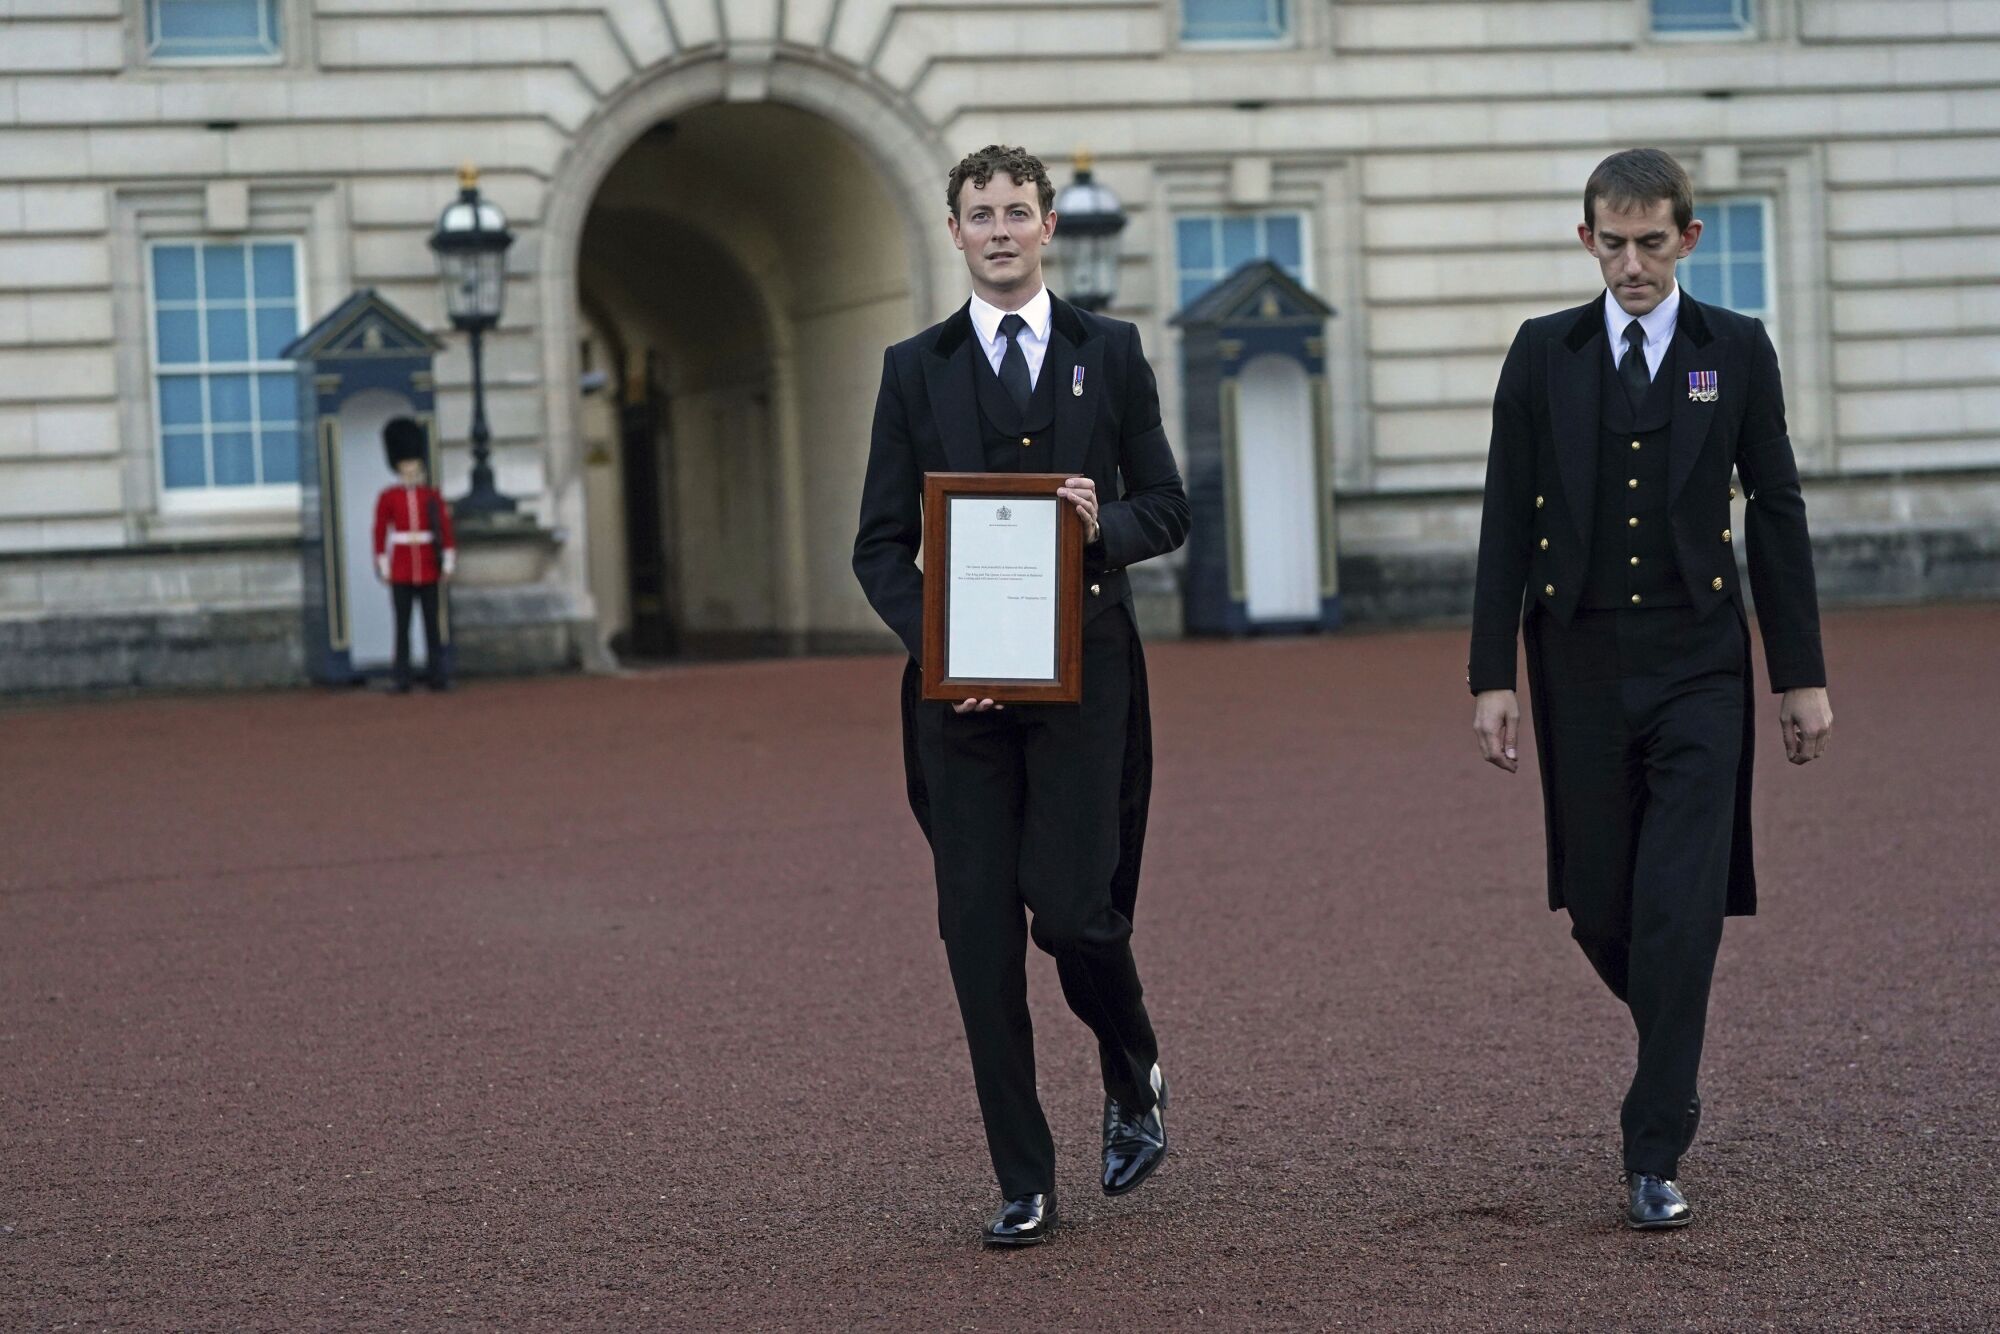 Kraliyet hane personelinin bir üyesi, Londra'daki Buckingham Sarayı'nın kapılarına bir bildirim gönderdi